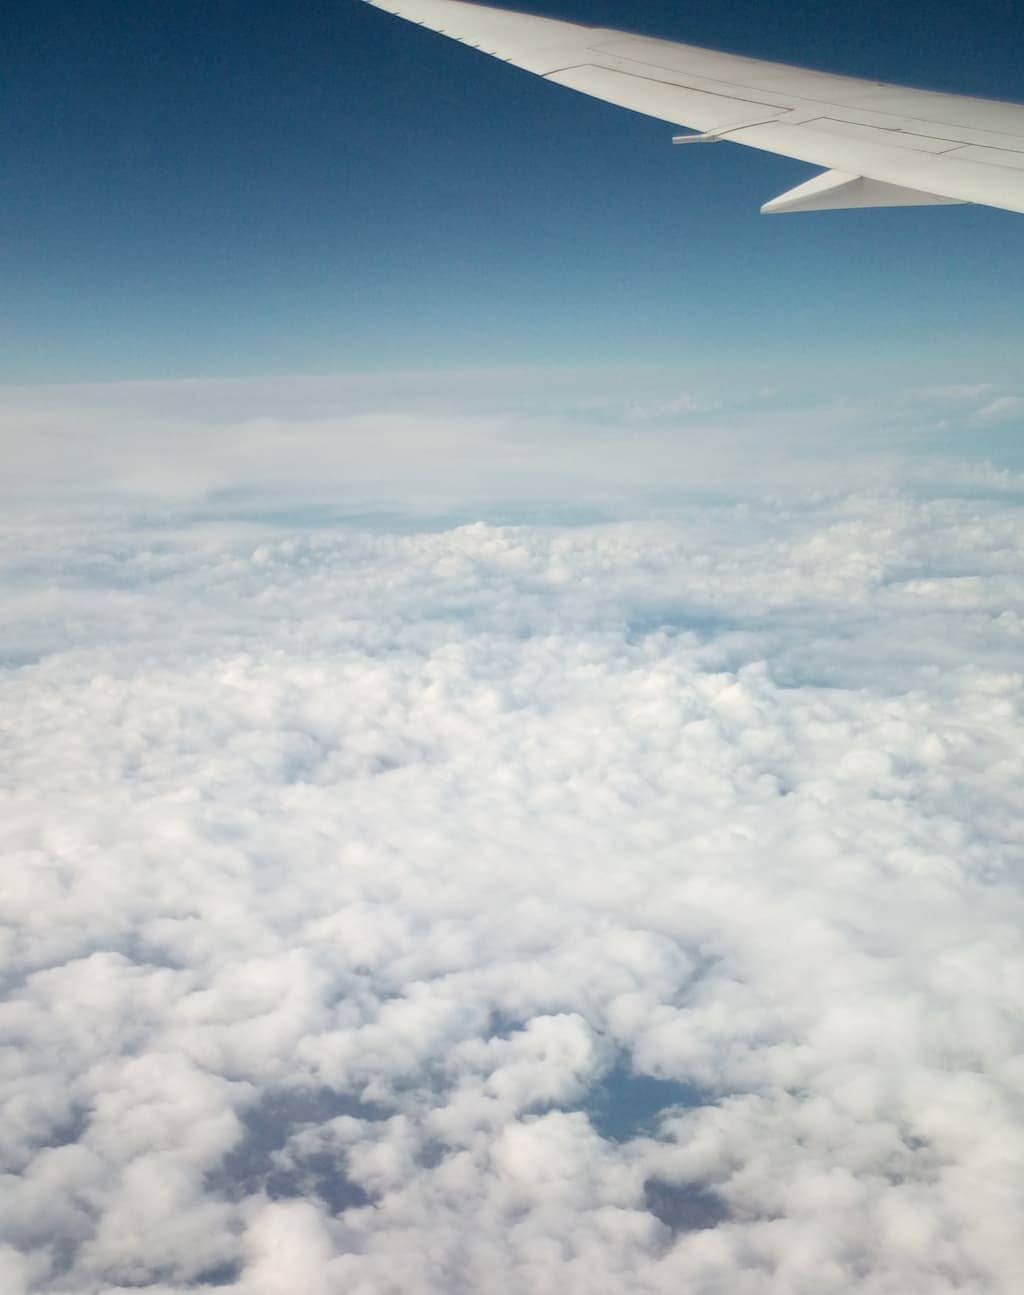 coronavirus travel above the clouds